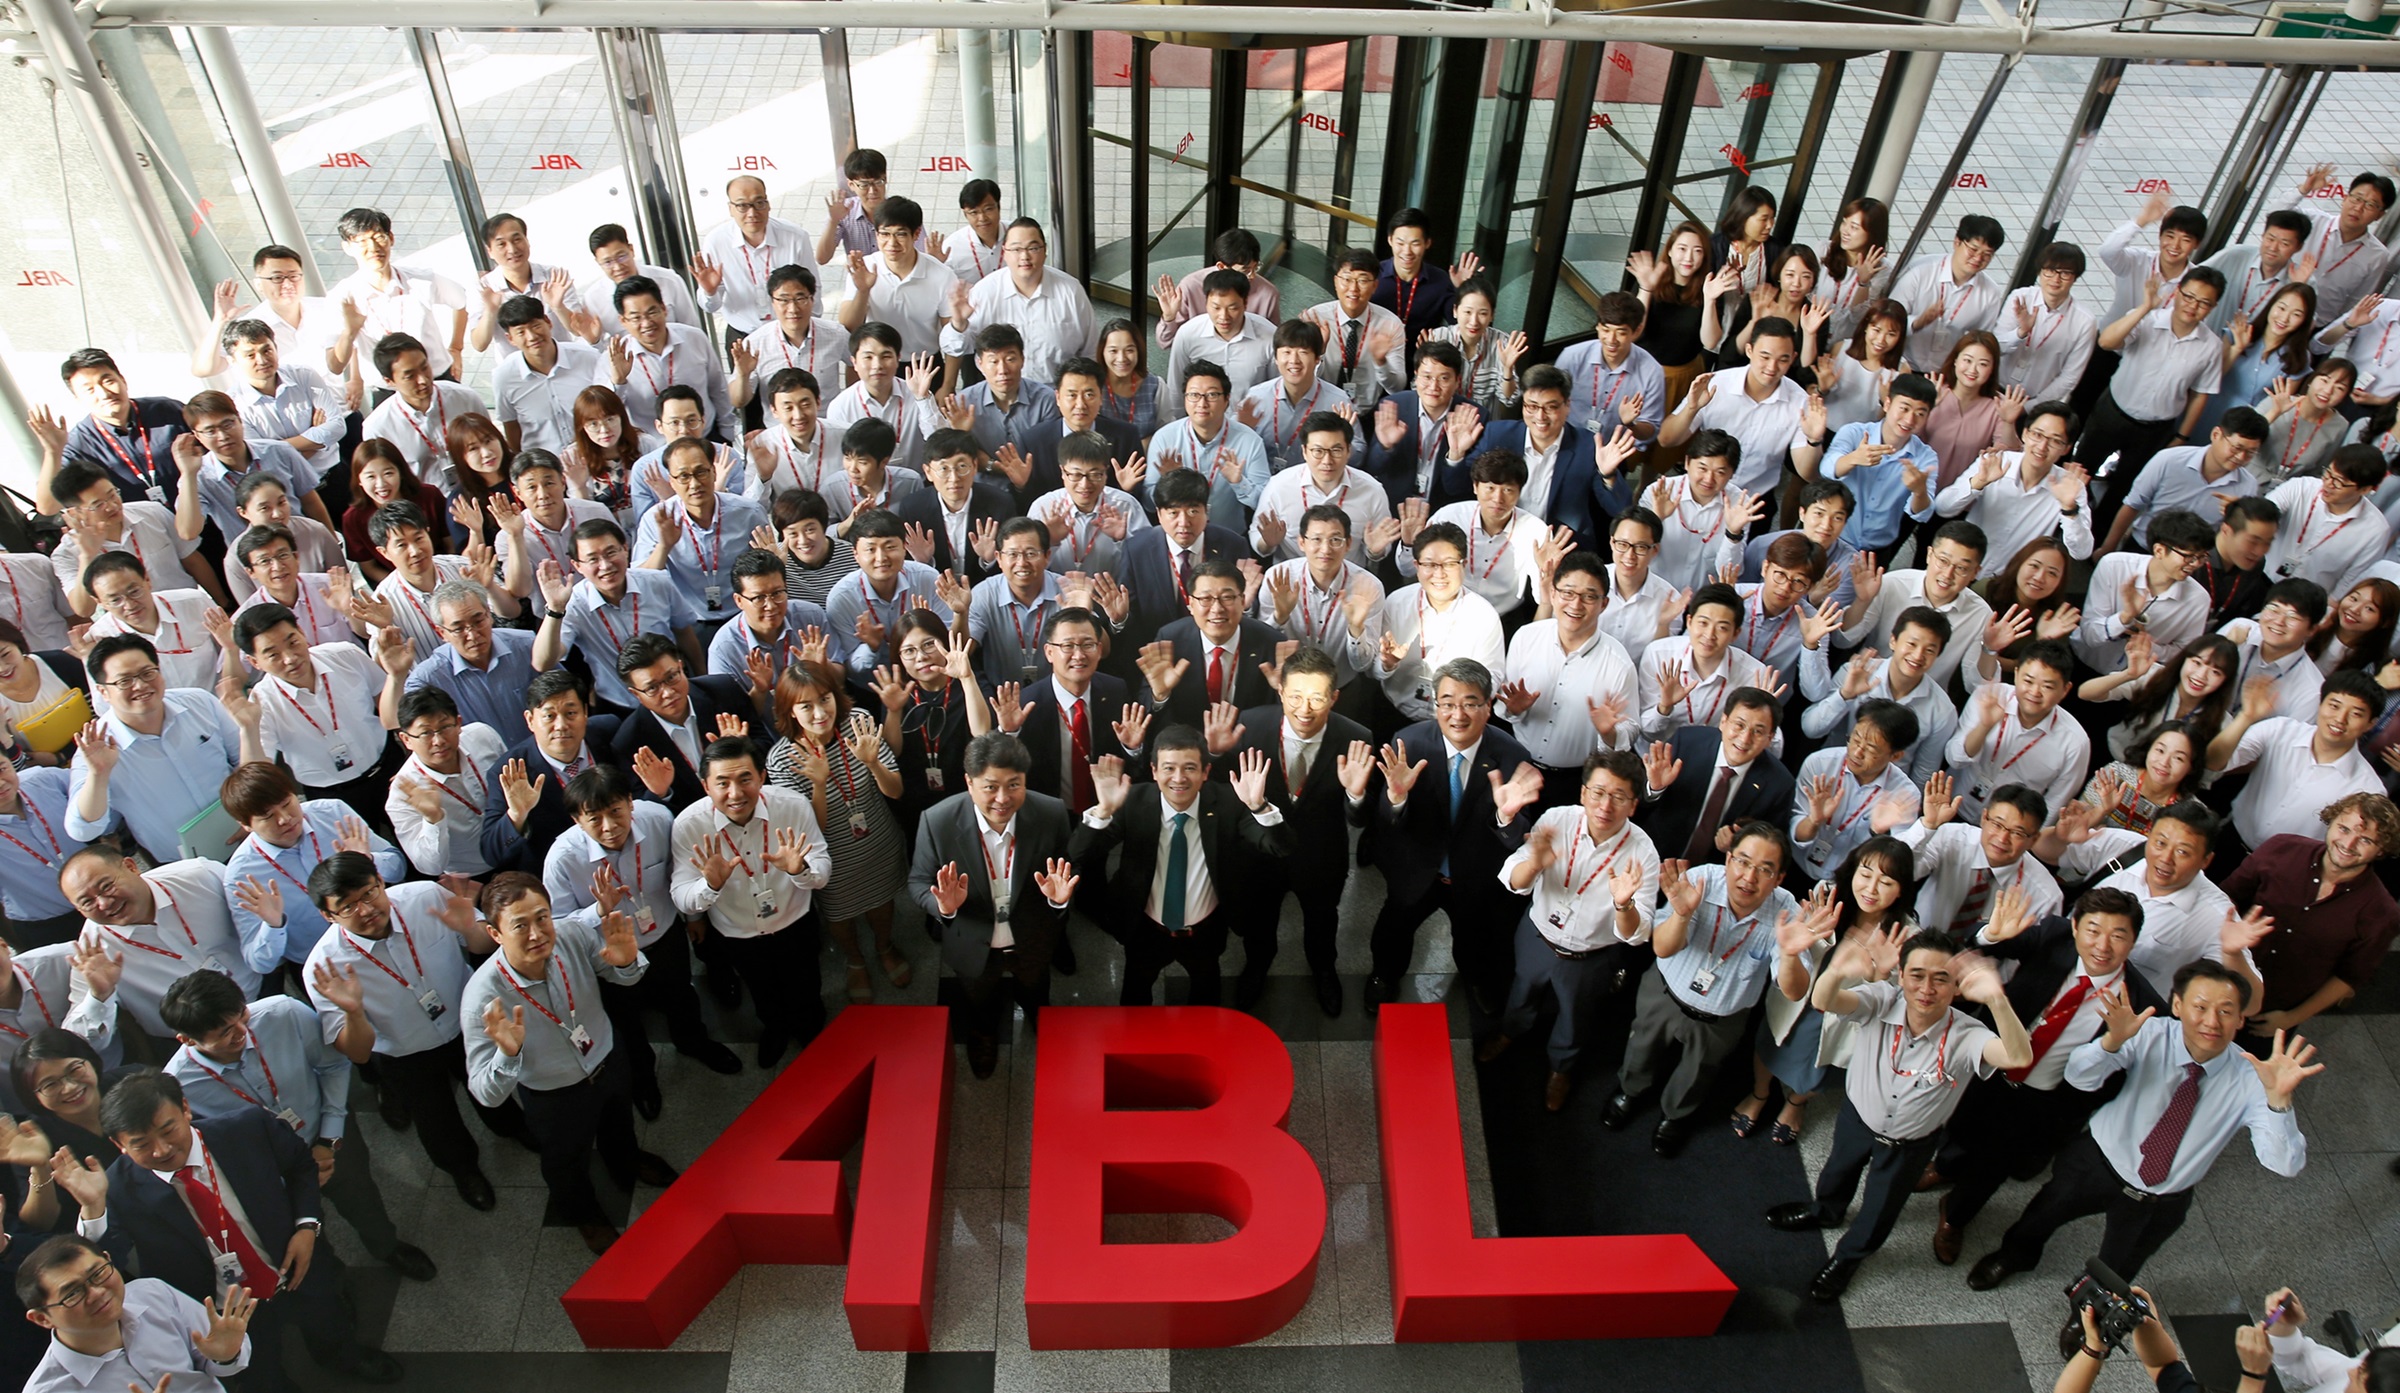 순레이 사장을 비롯한 ABL생명 직원들이 8월 1일 서울 여의도 본사에서 ABL생명의 출범을 축하하며 손을 흔들고 있는 모습의 사진